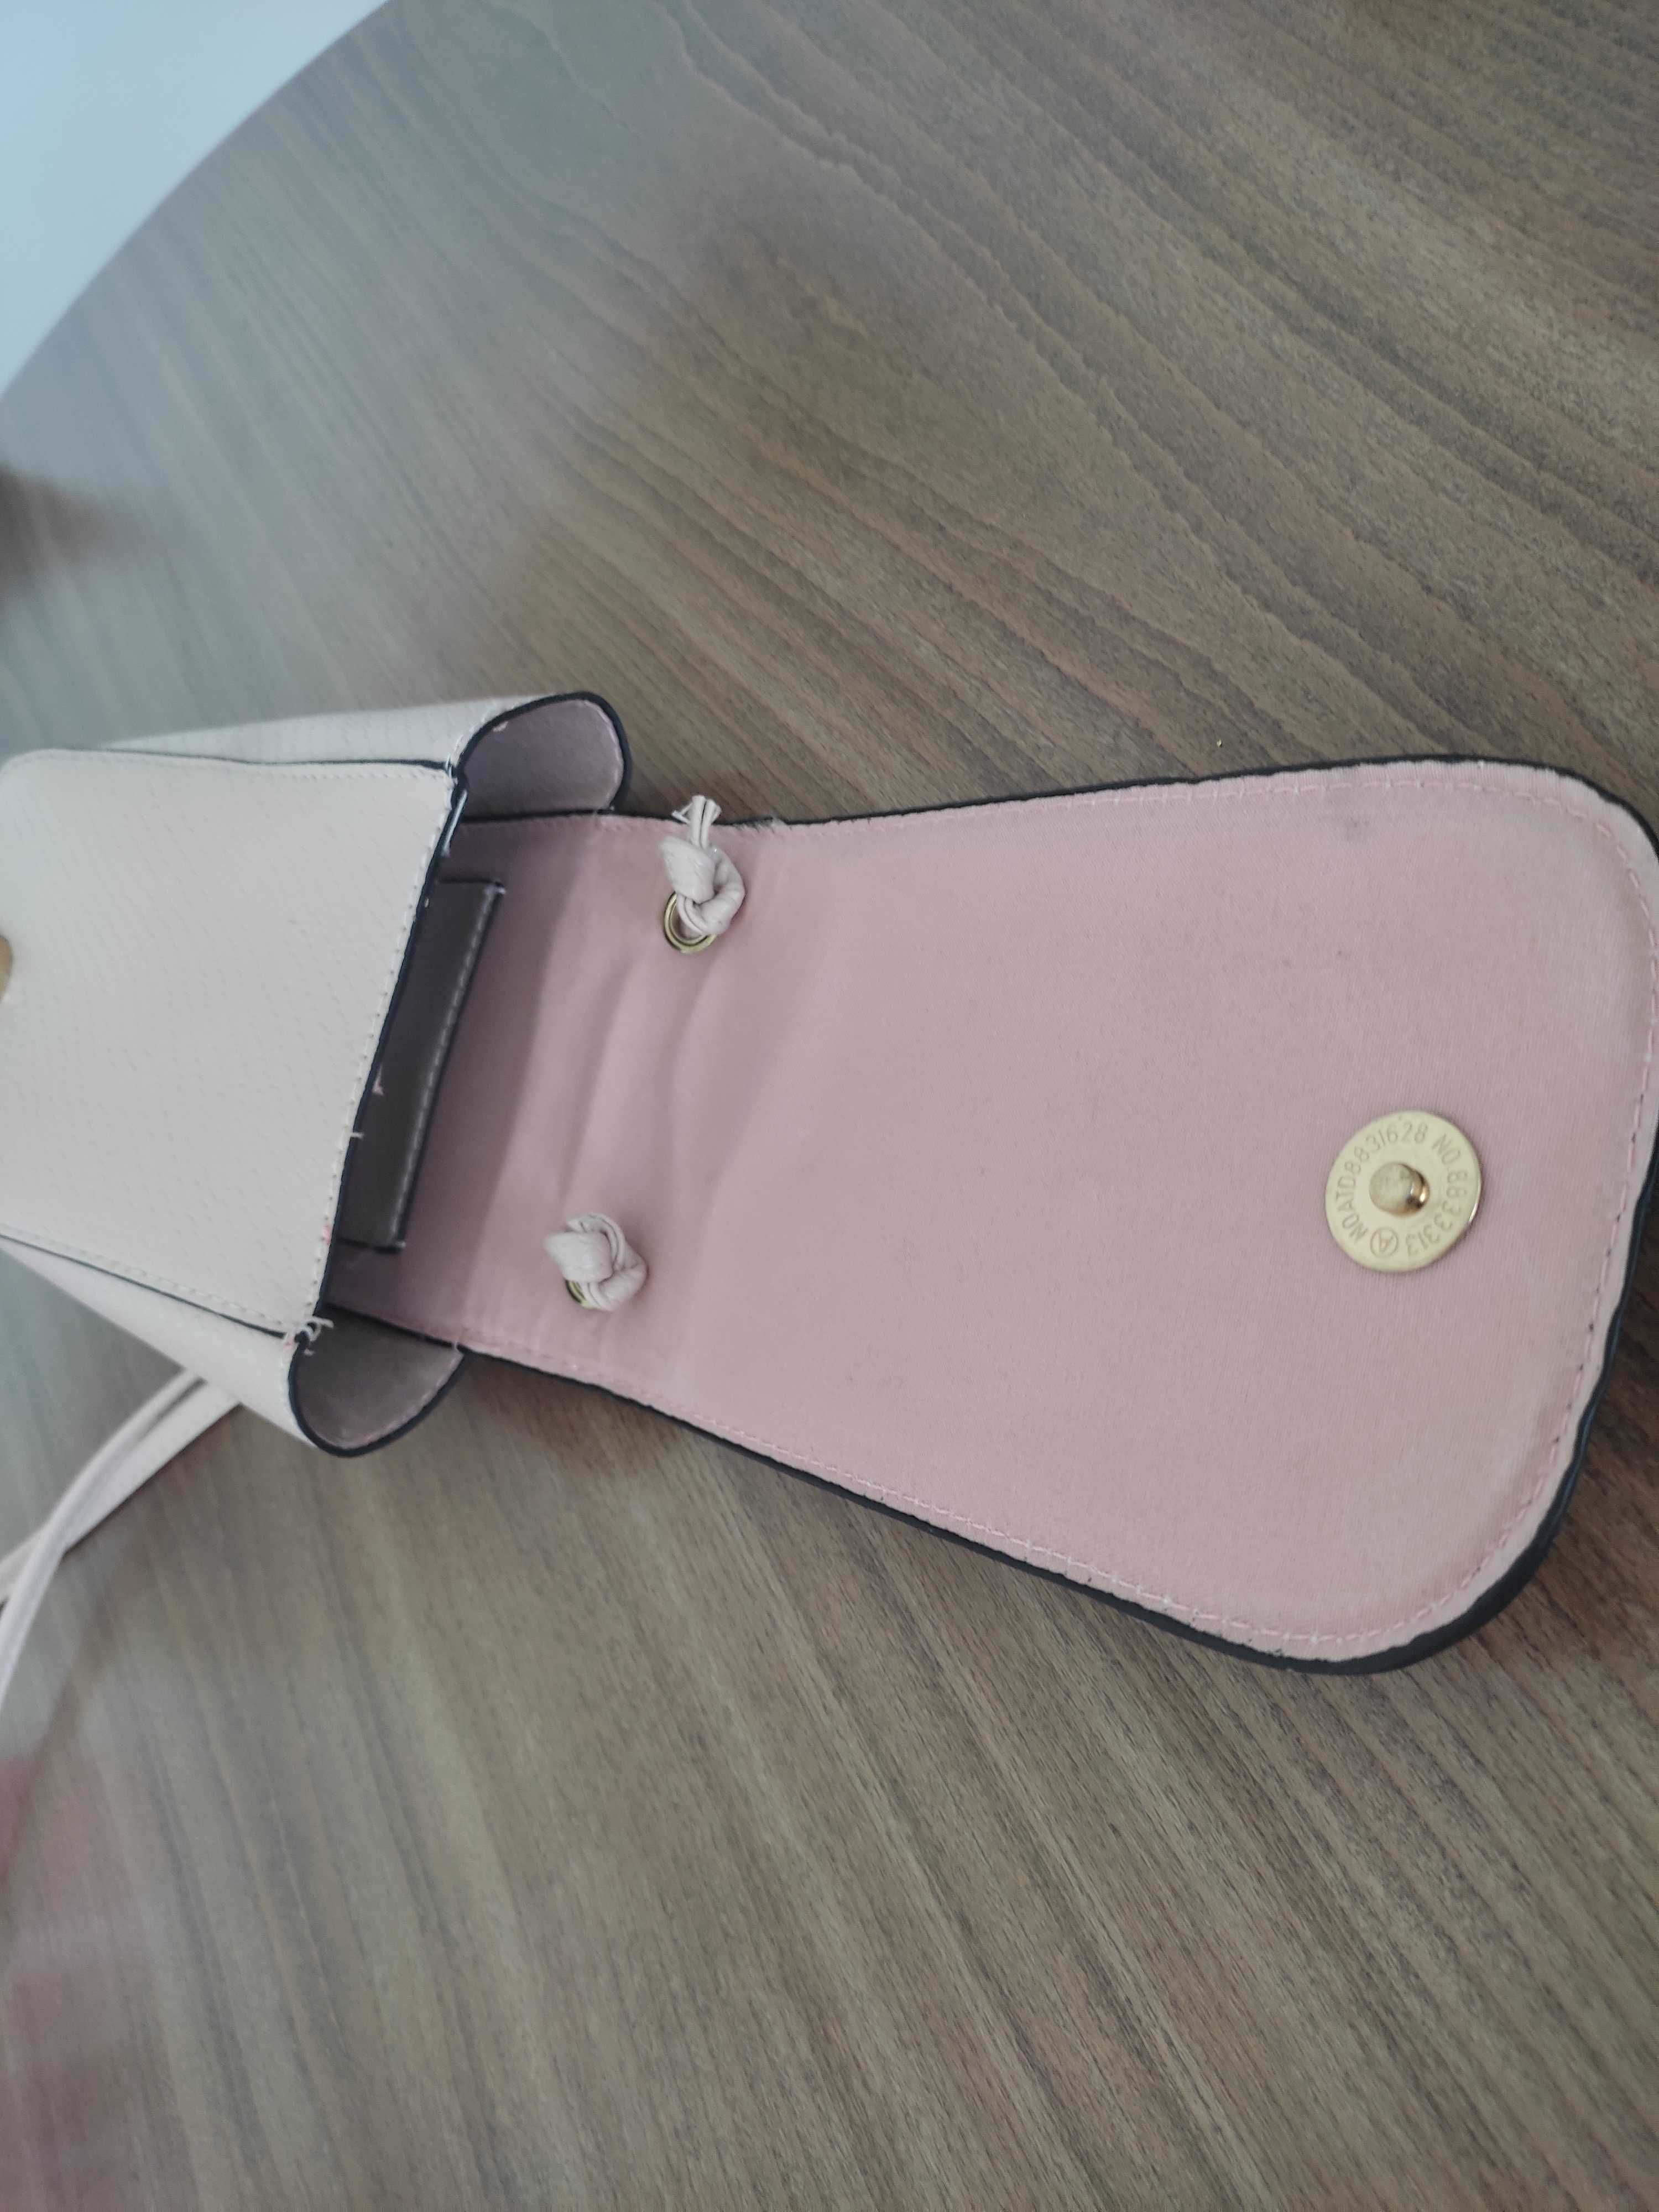 Практична дамска чантичка за телефон и портфейли в бледо розов цвят.